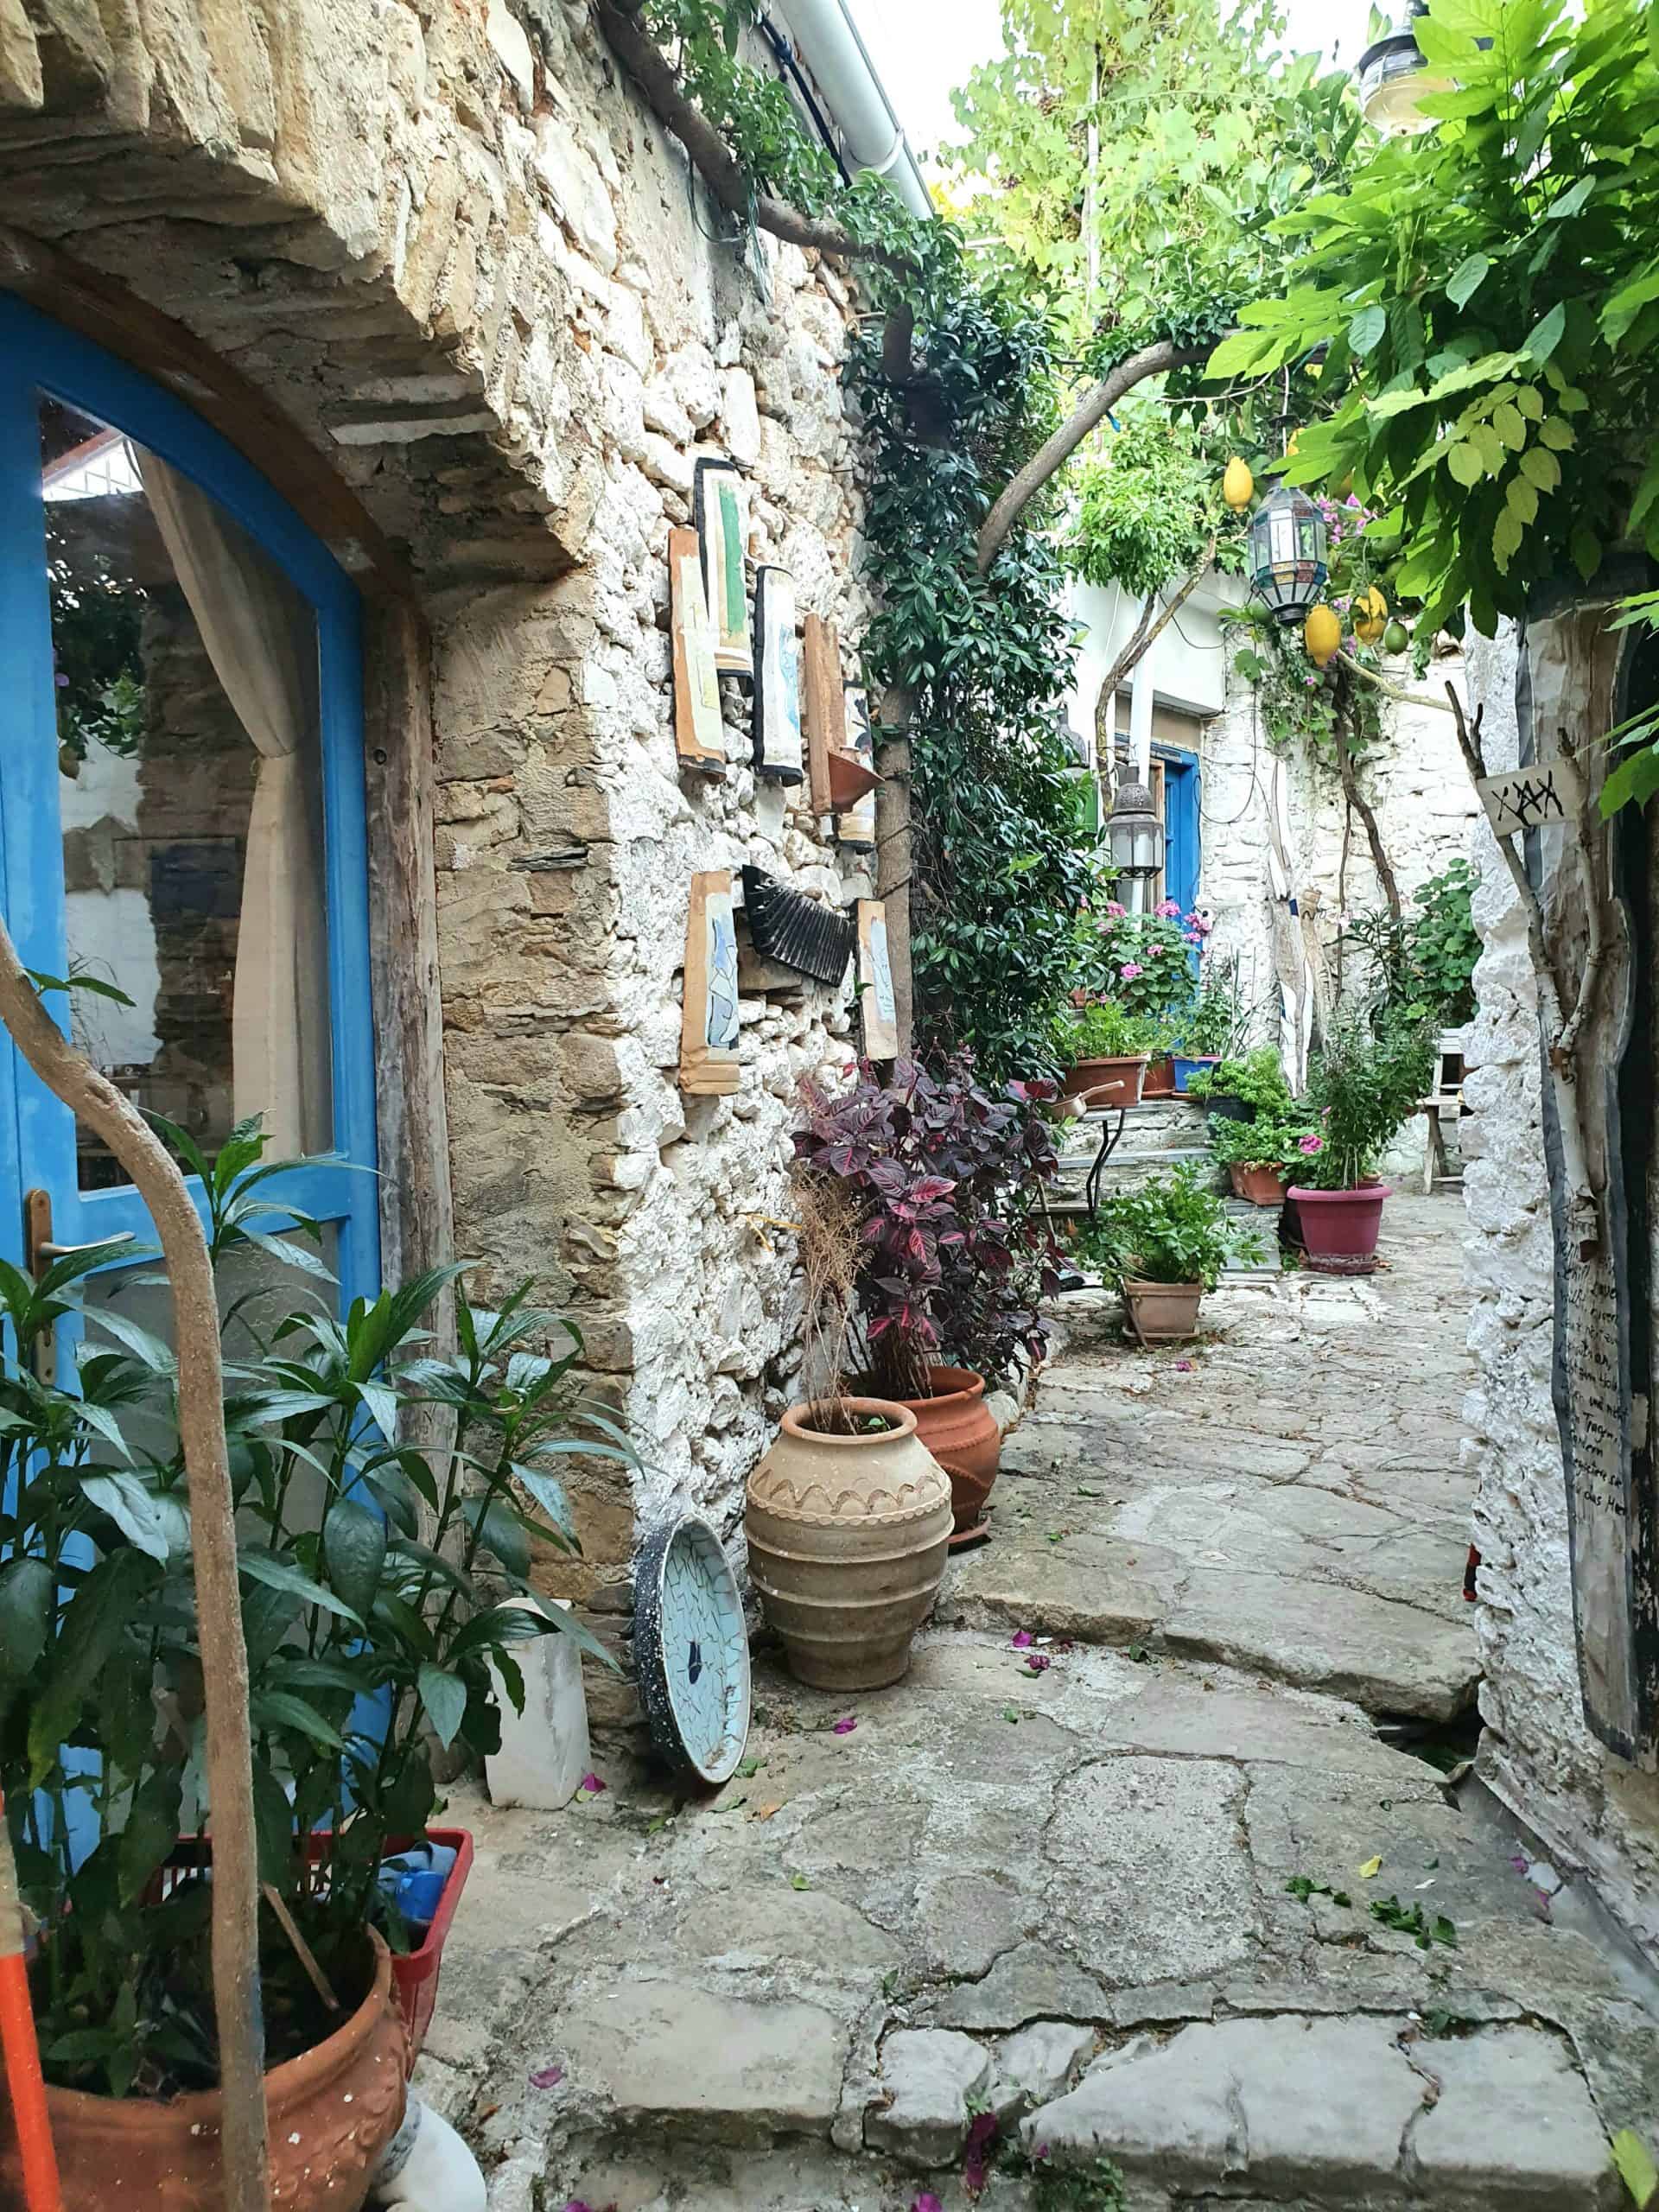 Korfu lankytinos vietos